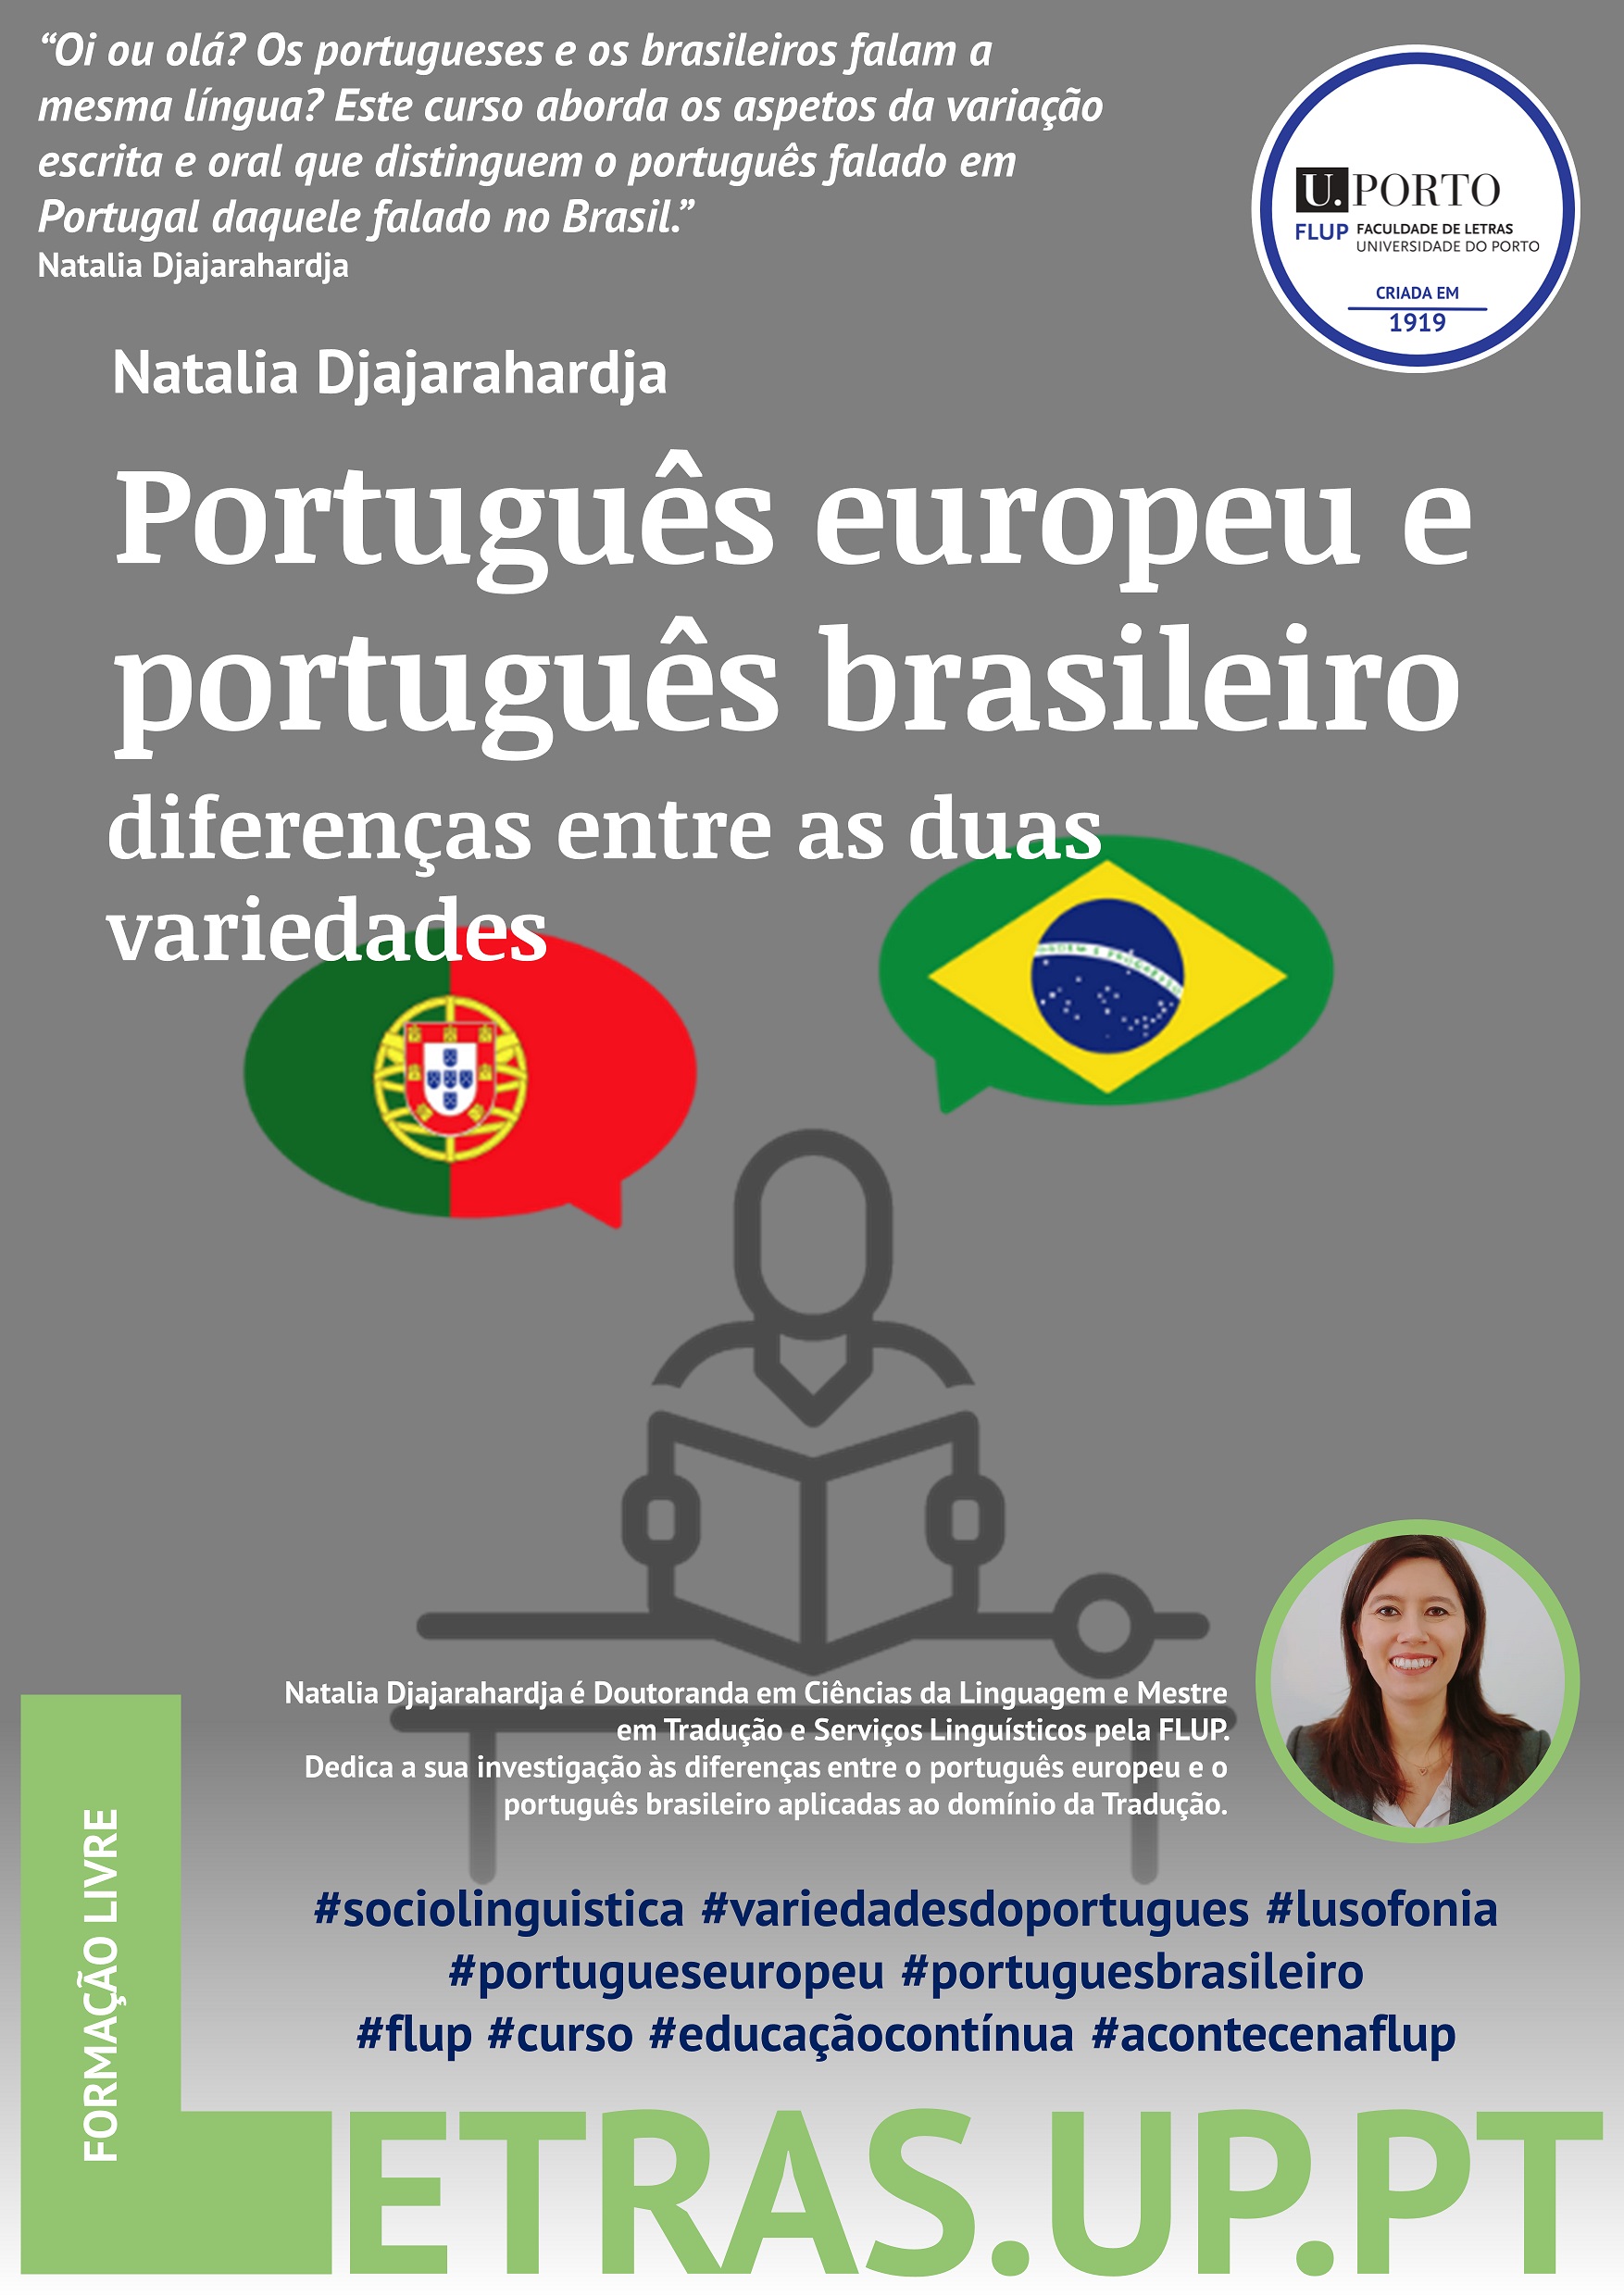 Português europeu e português brasileiro: apontamentos sobre as diferenças entre as duas variedades